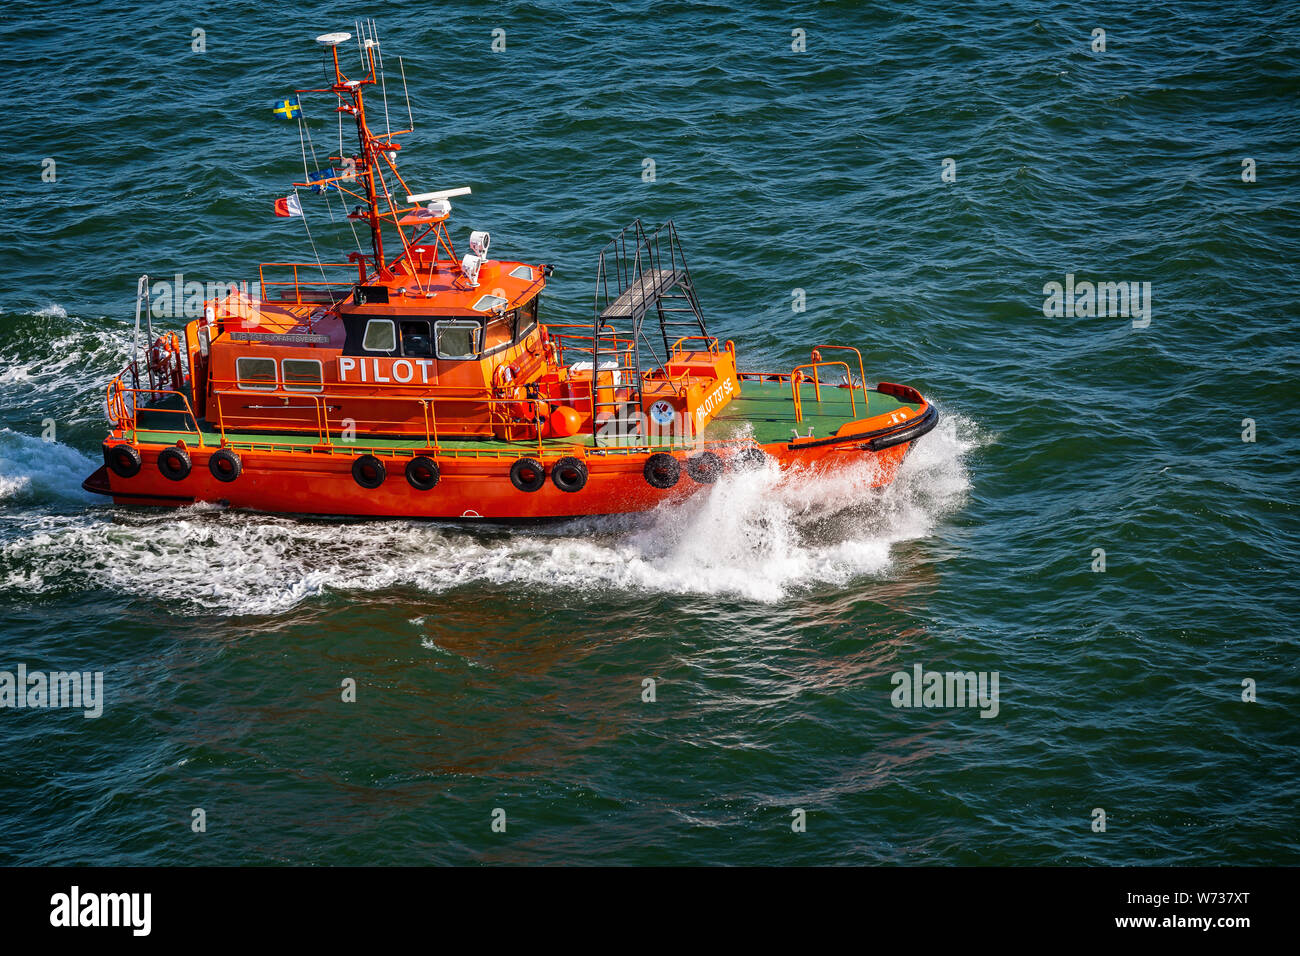 Pilota svedese crash in barca attraverso le onde ad alta velocità in mare vicino a Visby, Gotland (Svezia) il 20 Luglio 2019 Foto Stock